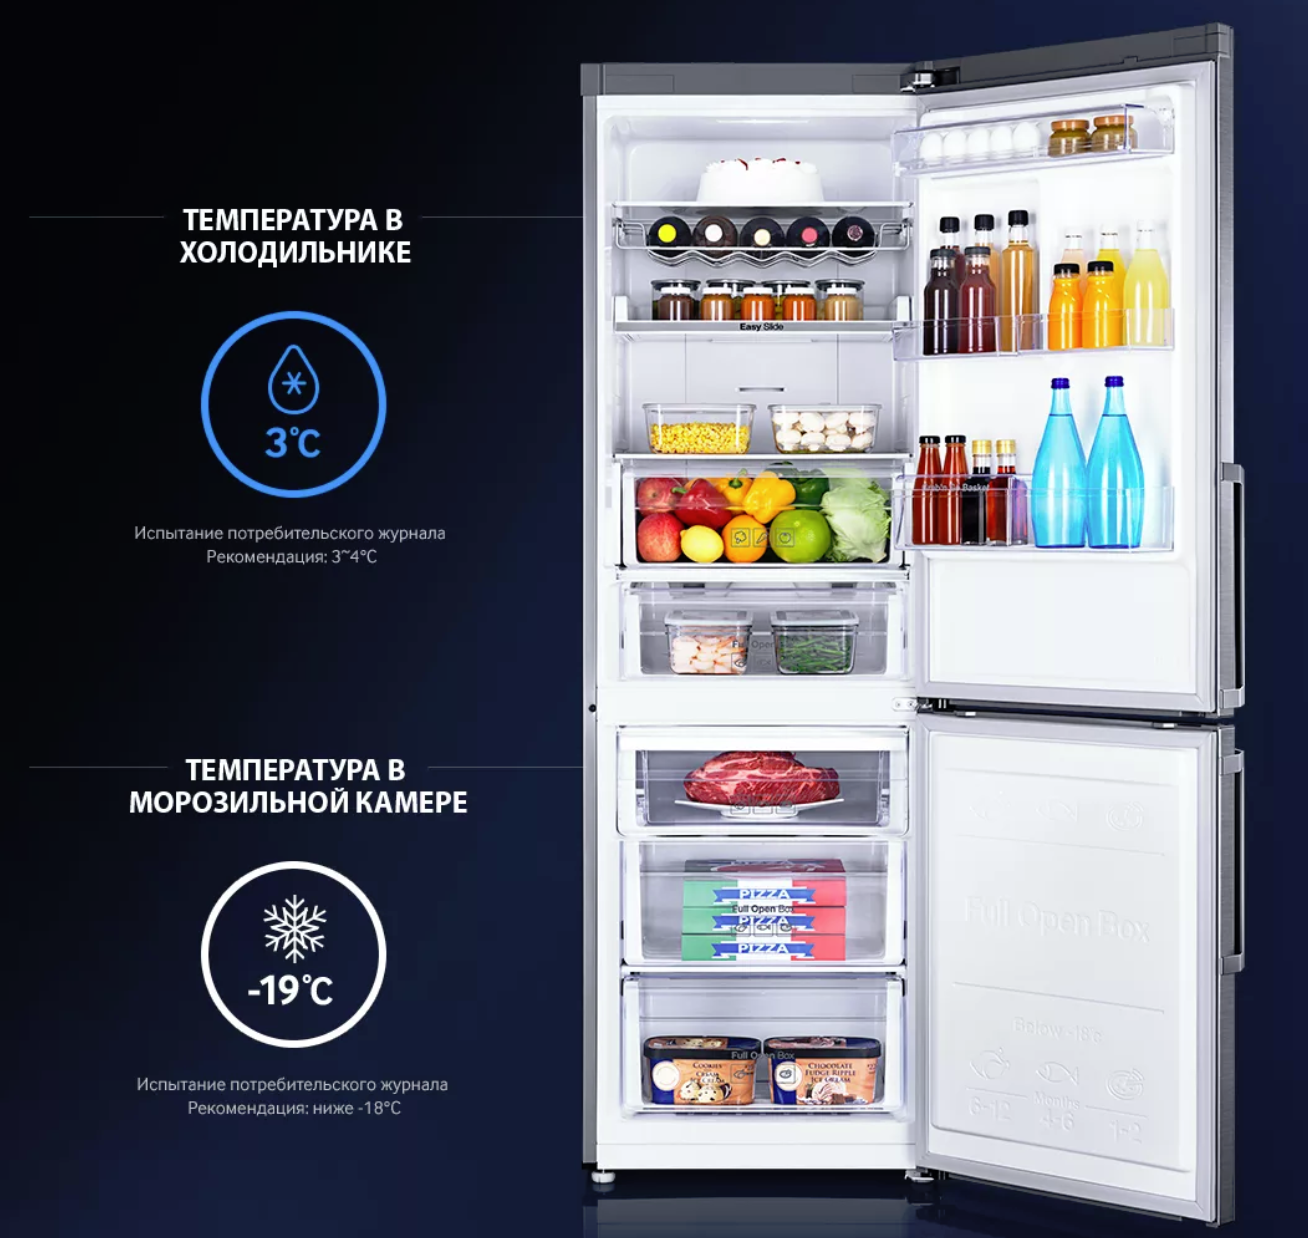 Сколько нужно держать в холодильнике. Холодильник самсунг двухкамерный градусы. Оптимальная температура в холодильнике самсунг. Температура в холодоль. Ьемпертврца в холодильнике.